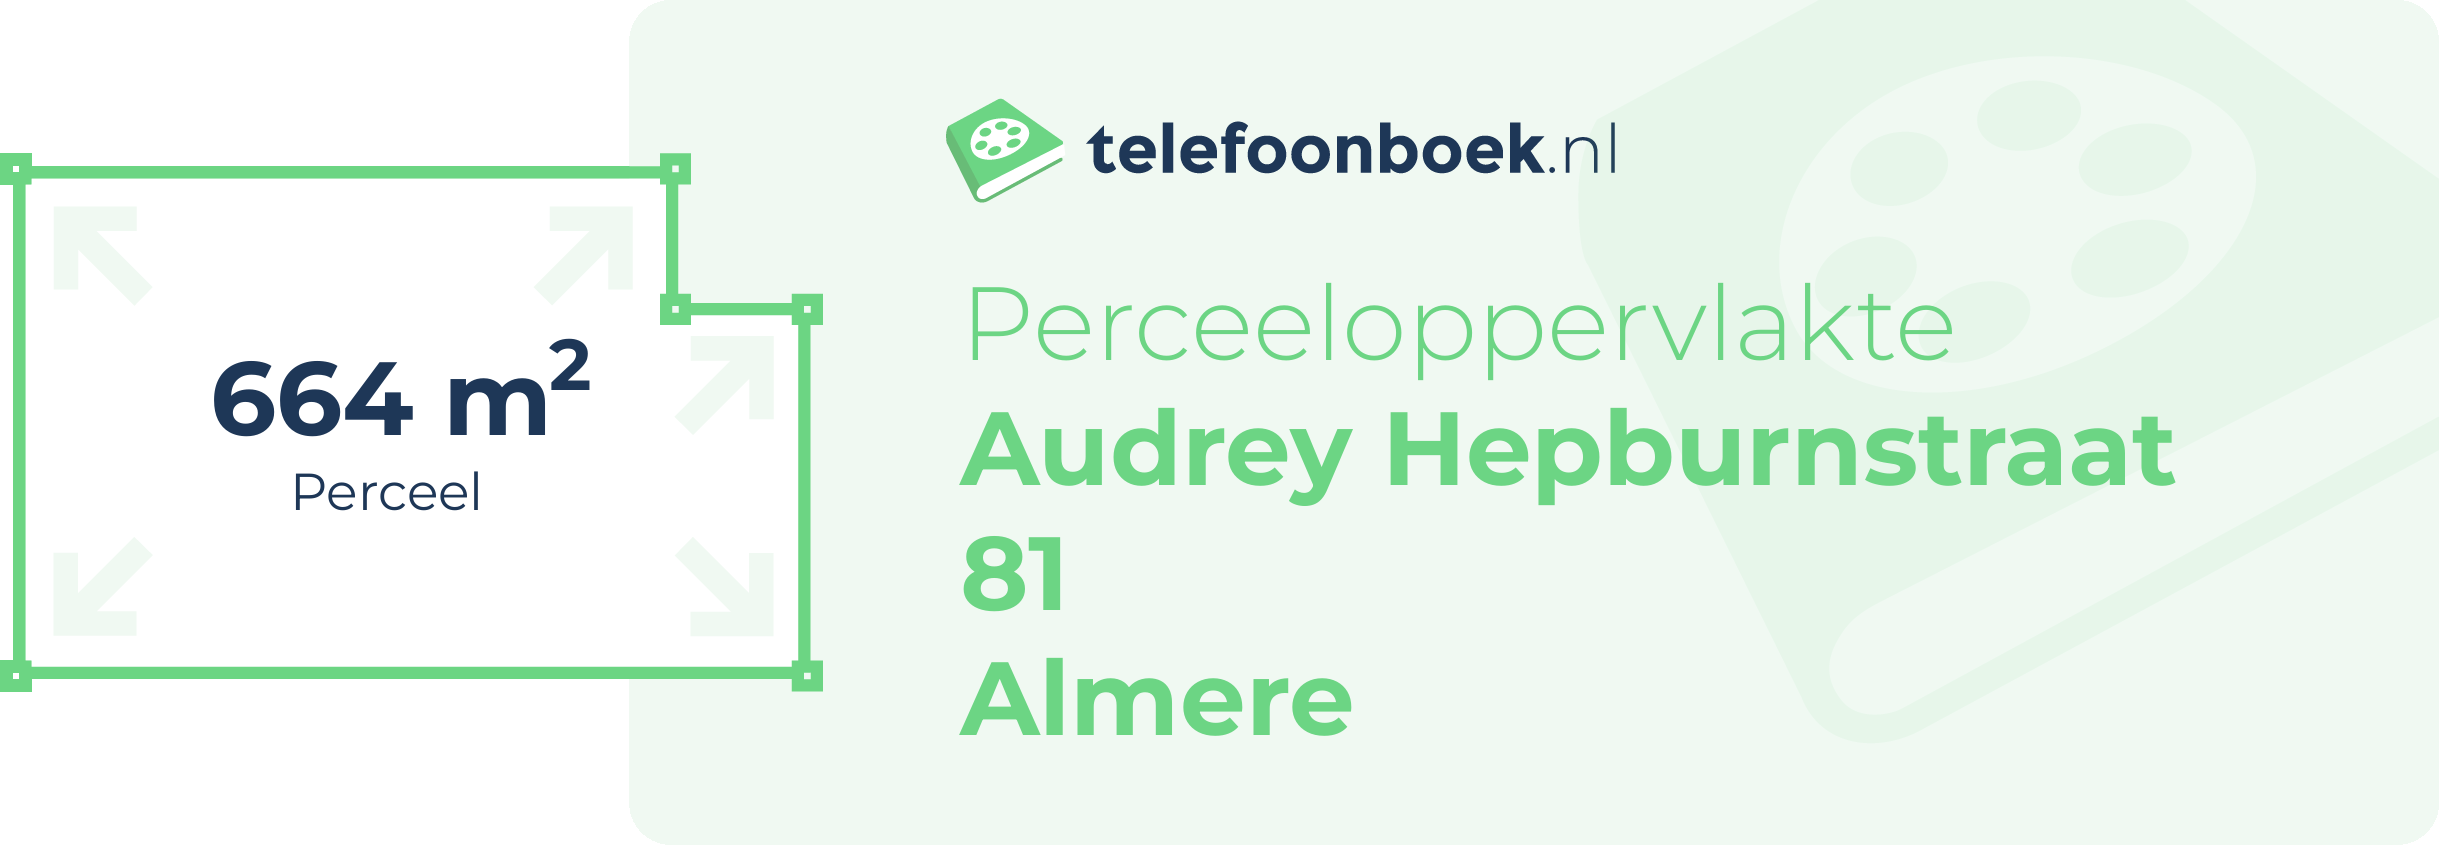 Perceeloppervlakte Audrey Hepburnstraat 81 Almere